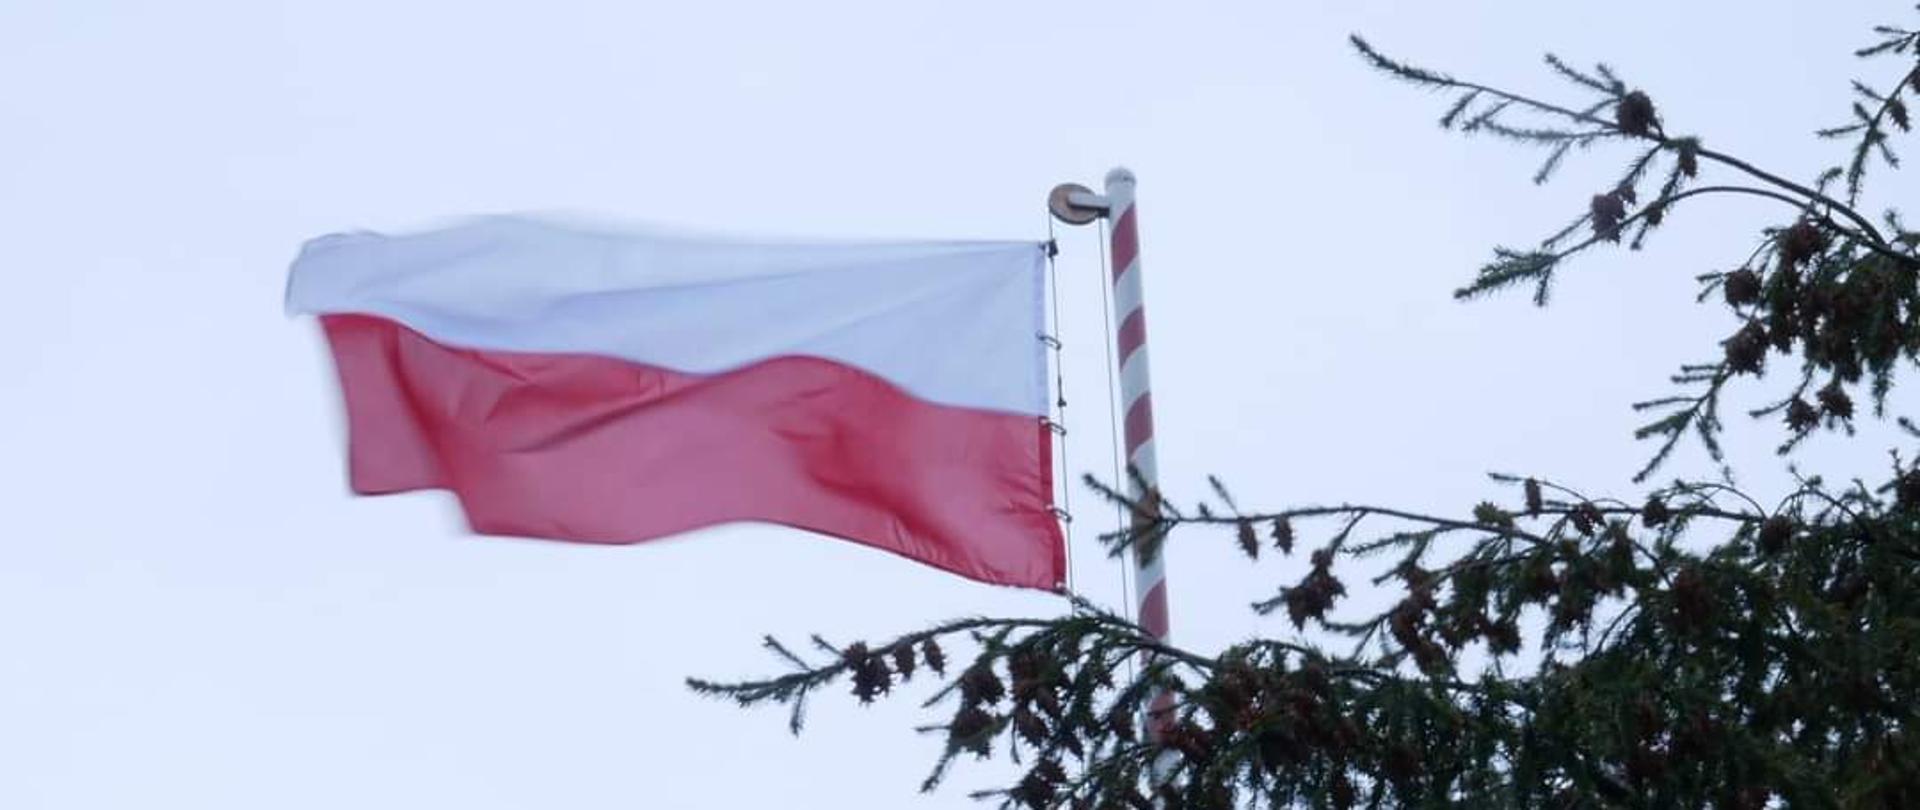 Zdjęcie przedstawia flagę RR trzepoczącą na maszcie